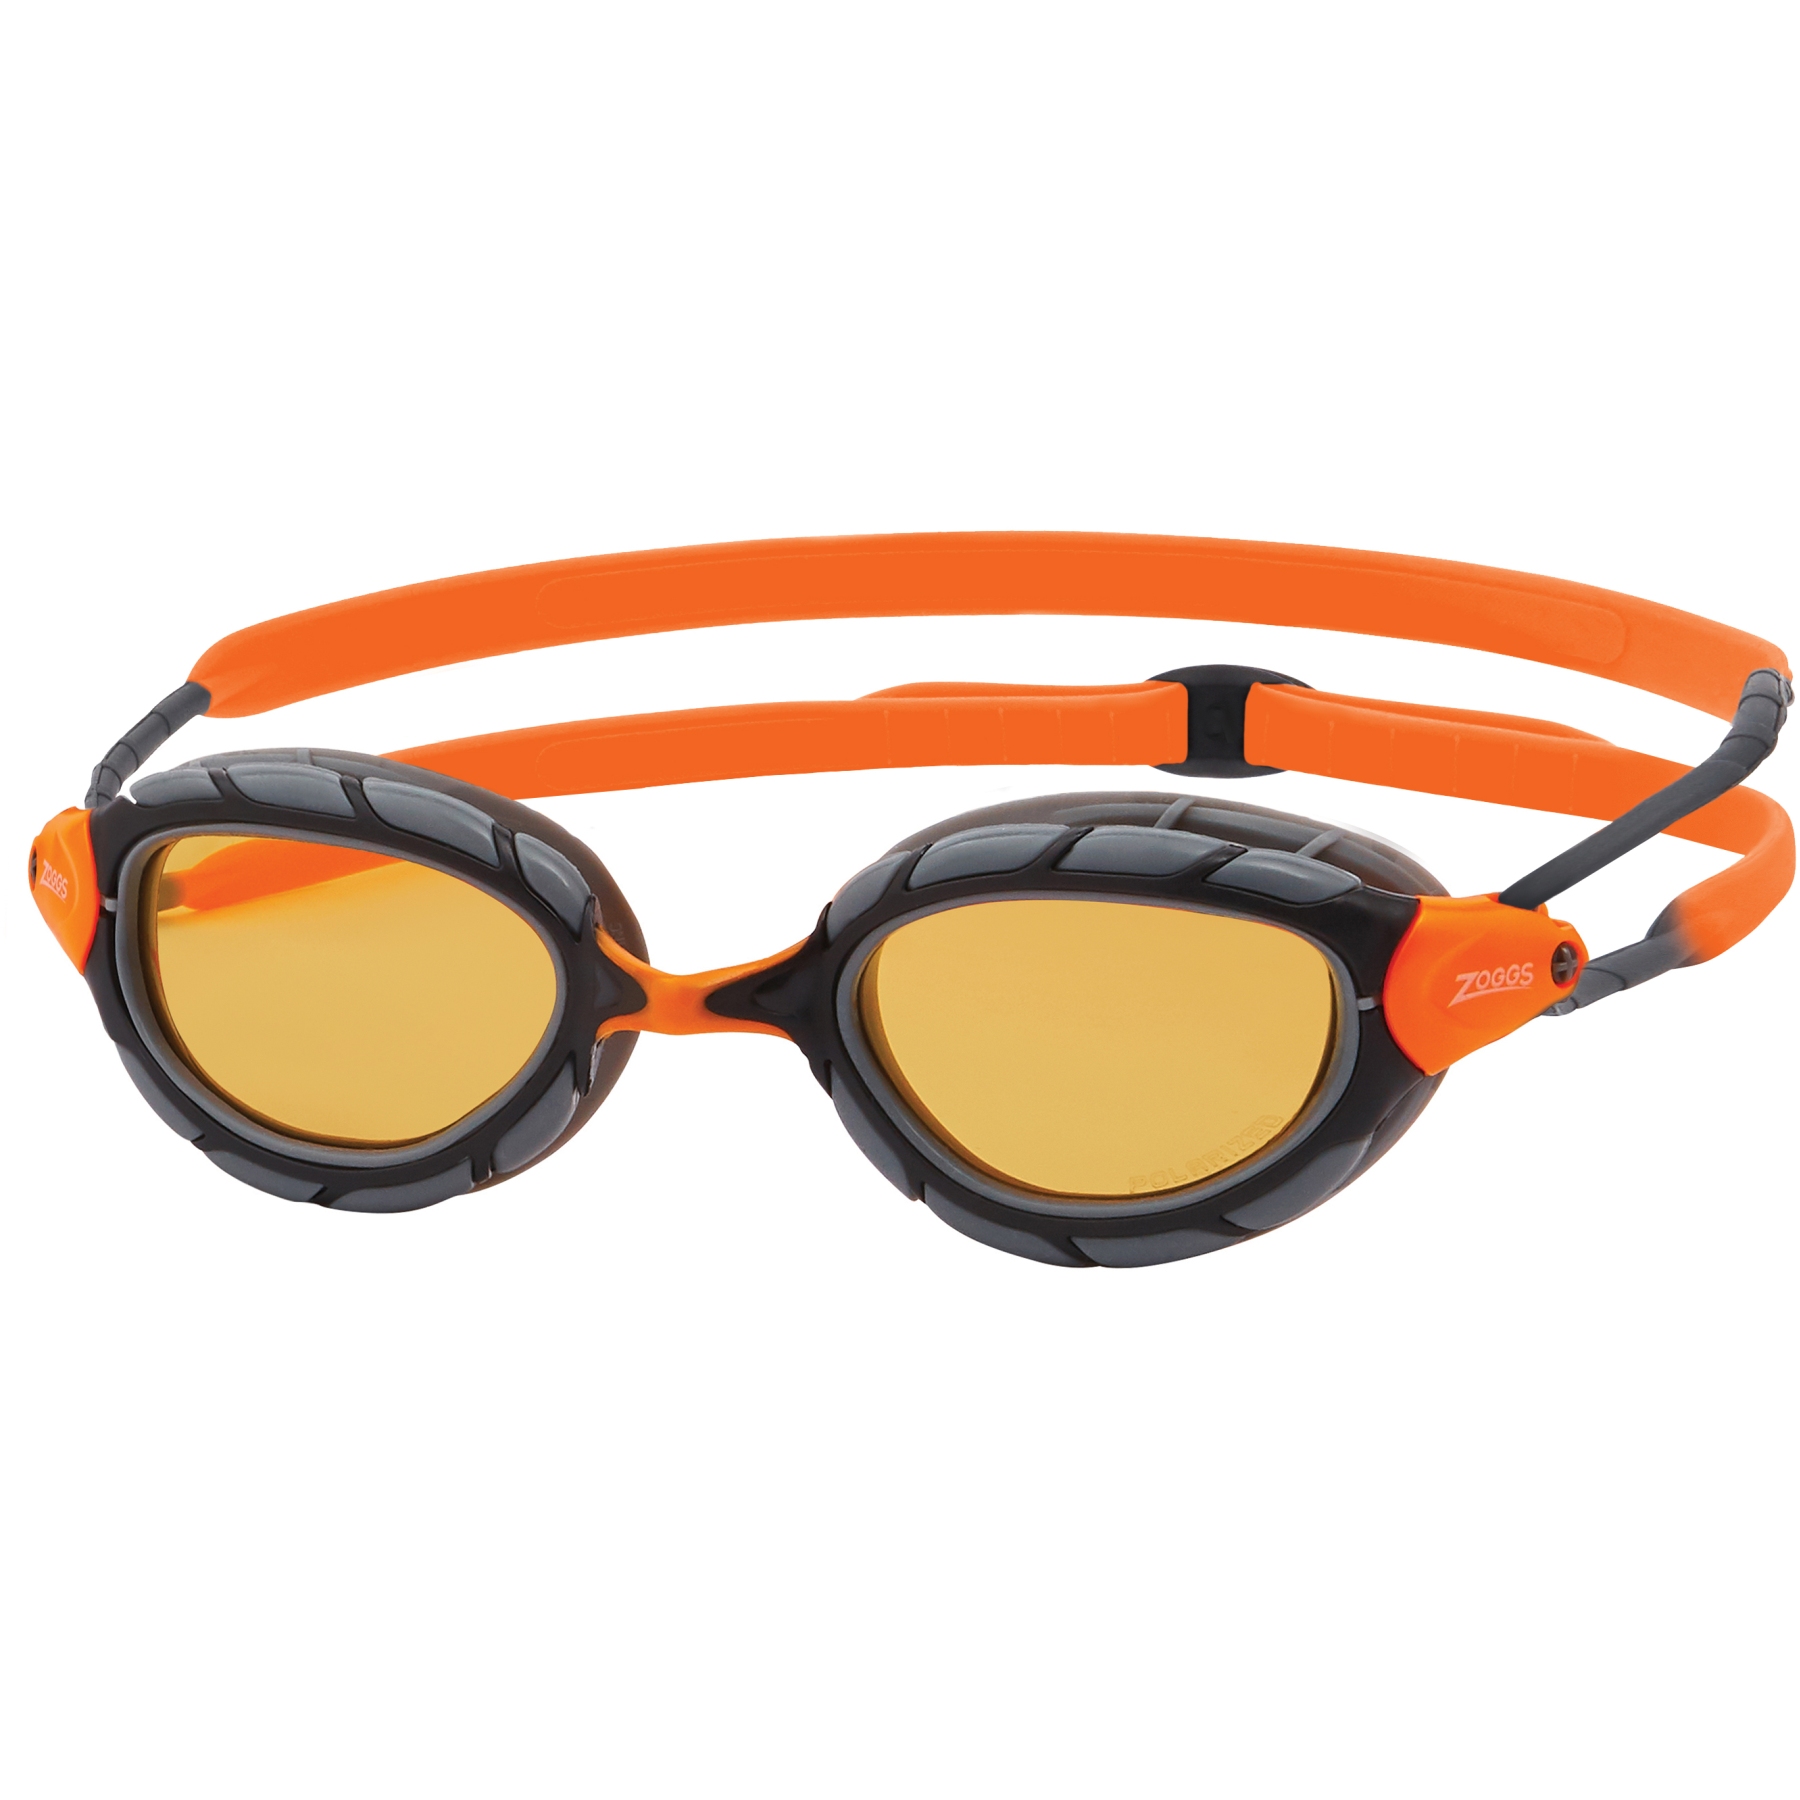 Produktbild von Zoggs Predator Schwimmbrille - Polarized Ultra Copper Gläser - Small Fit - Grau/Orange